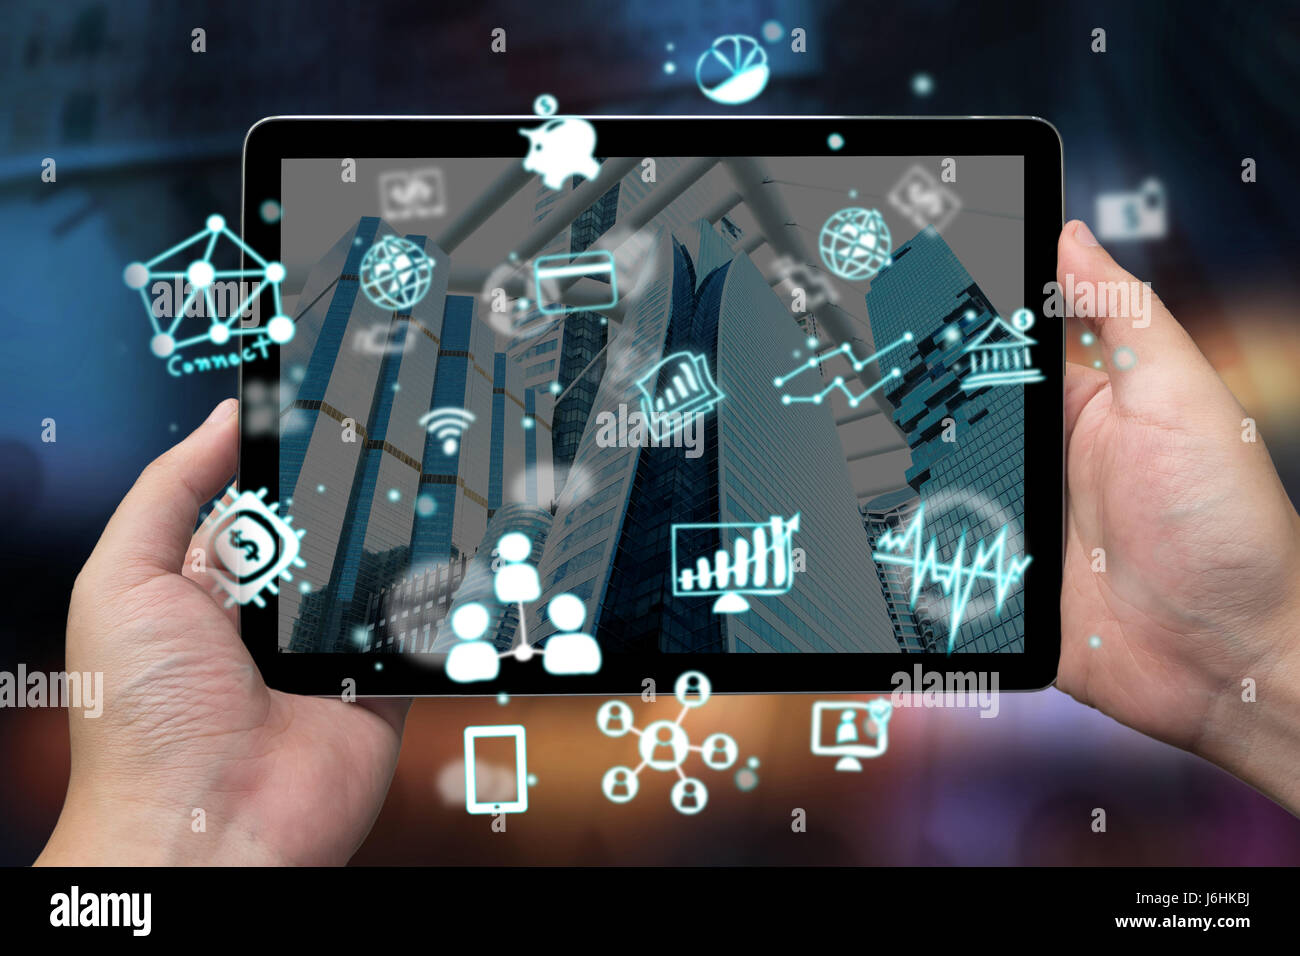 Fintech concept , concept technologique et financier .Man hand holding tablet avec des icônes à l'écran et abstract background Banque D'Images